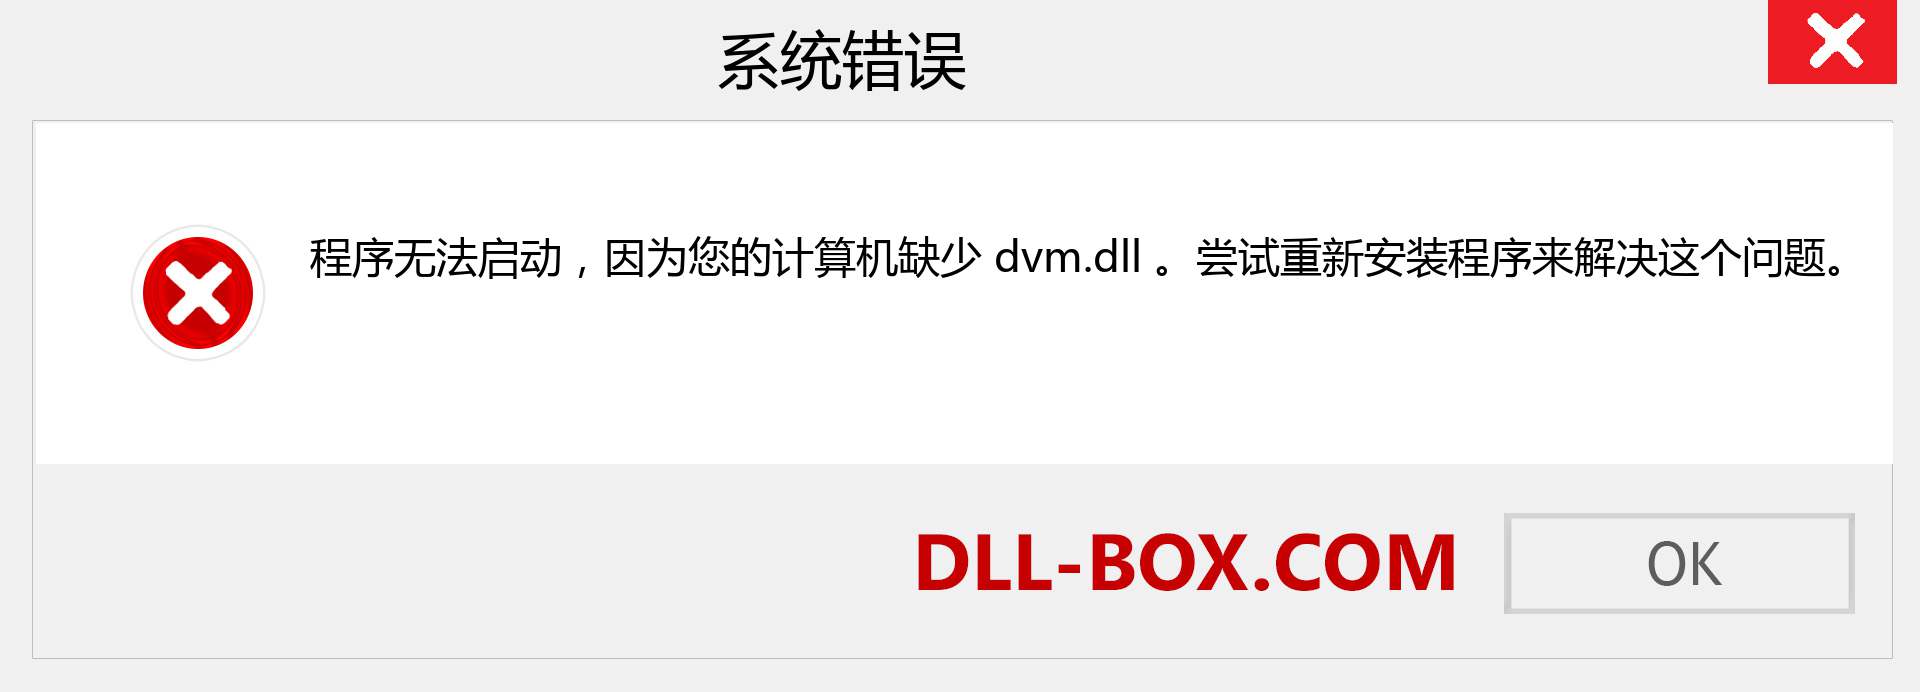 dvm.dll 文件丢失？。 适用于 Windows 7、8、10 的下载 - 修复 Windows、照片、图像上的 dvm dll 丢失错误